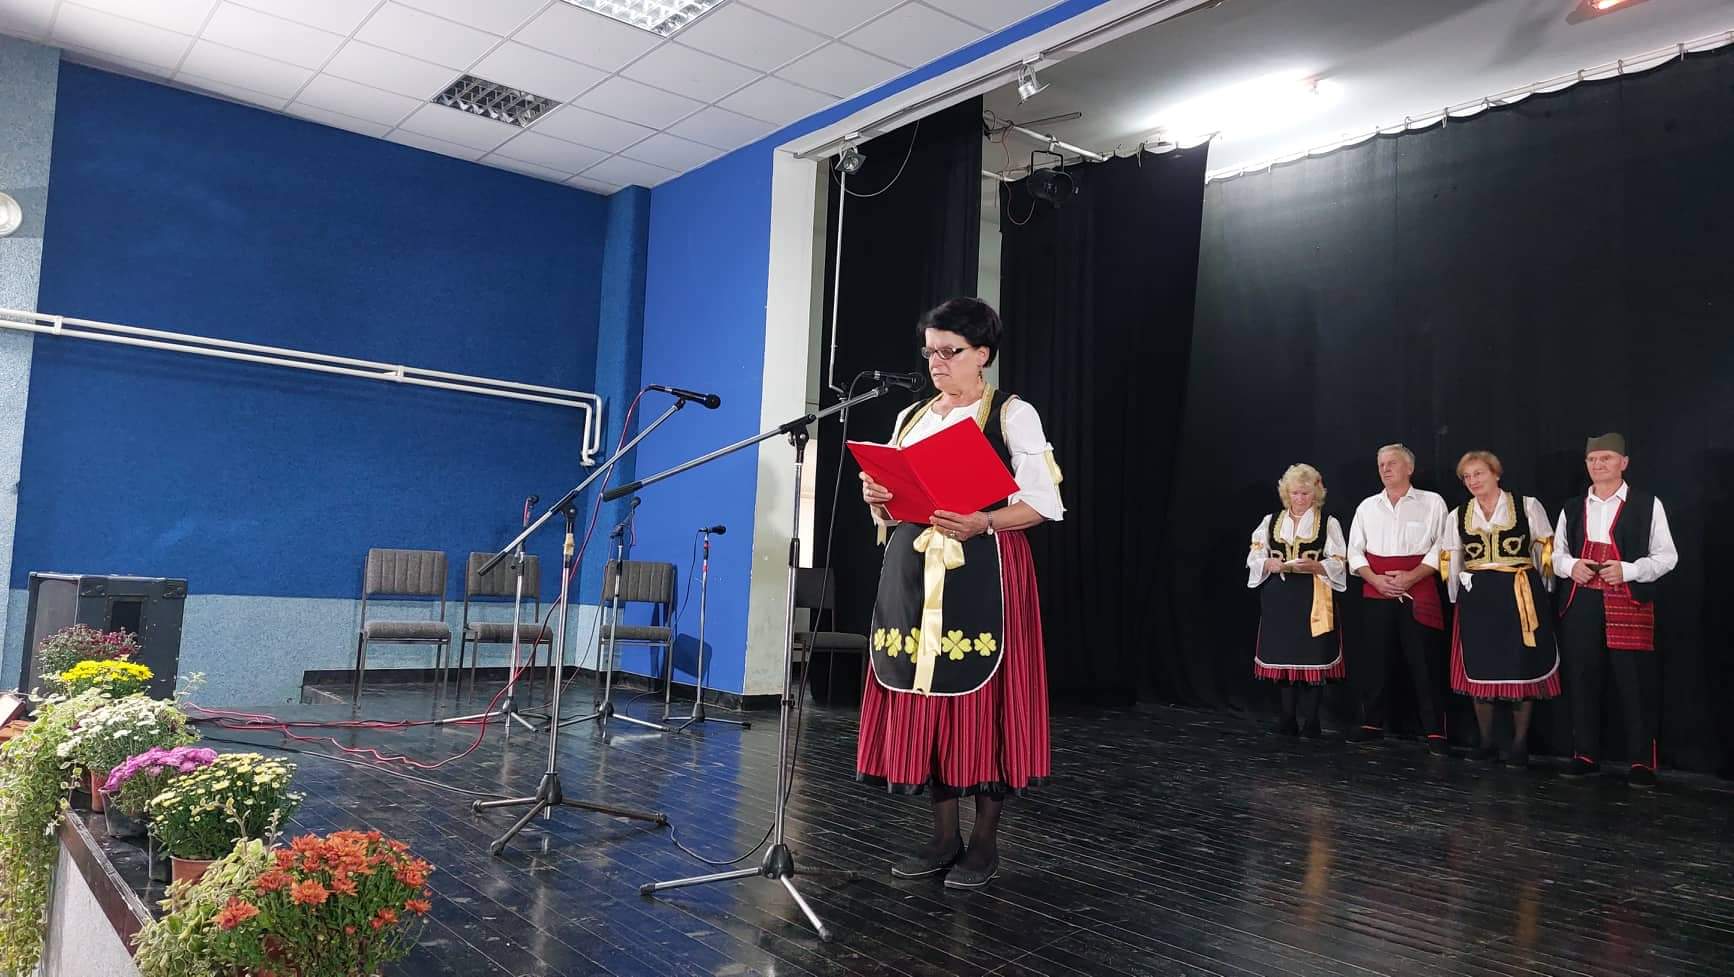 Penzioneri iz Vranja igrama, pesmom i predstavom "Koštana" nastupili na festivalu u Zaječaru 2